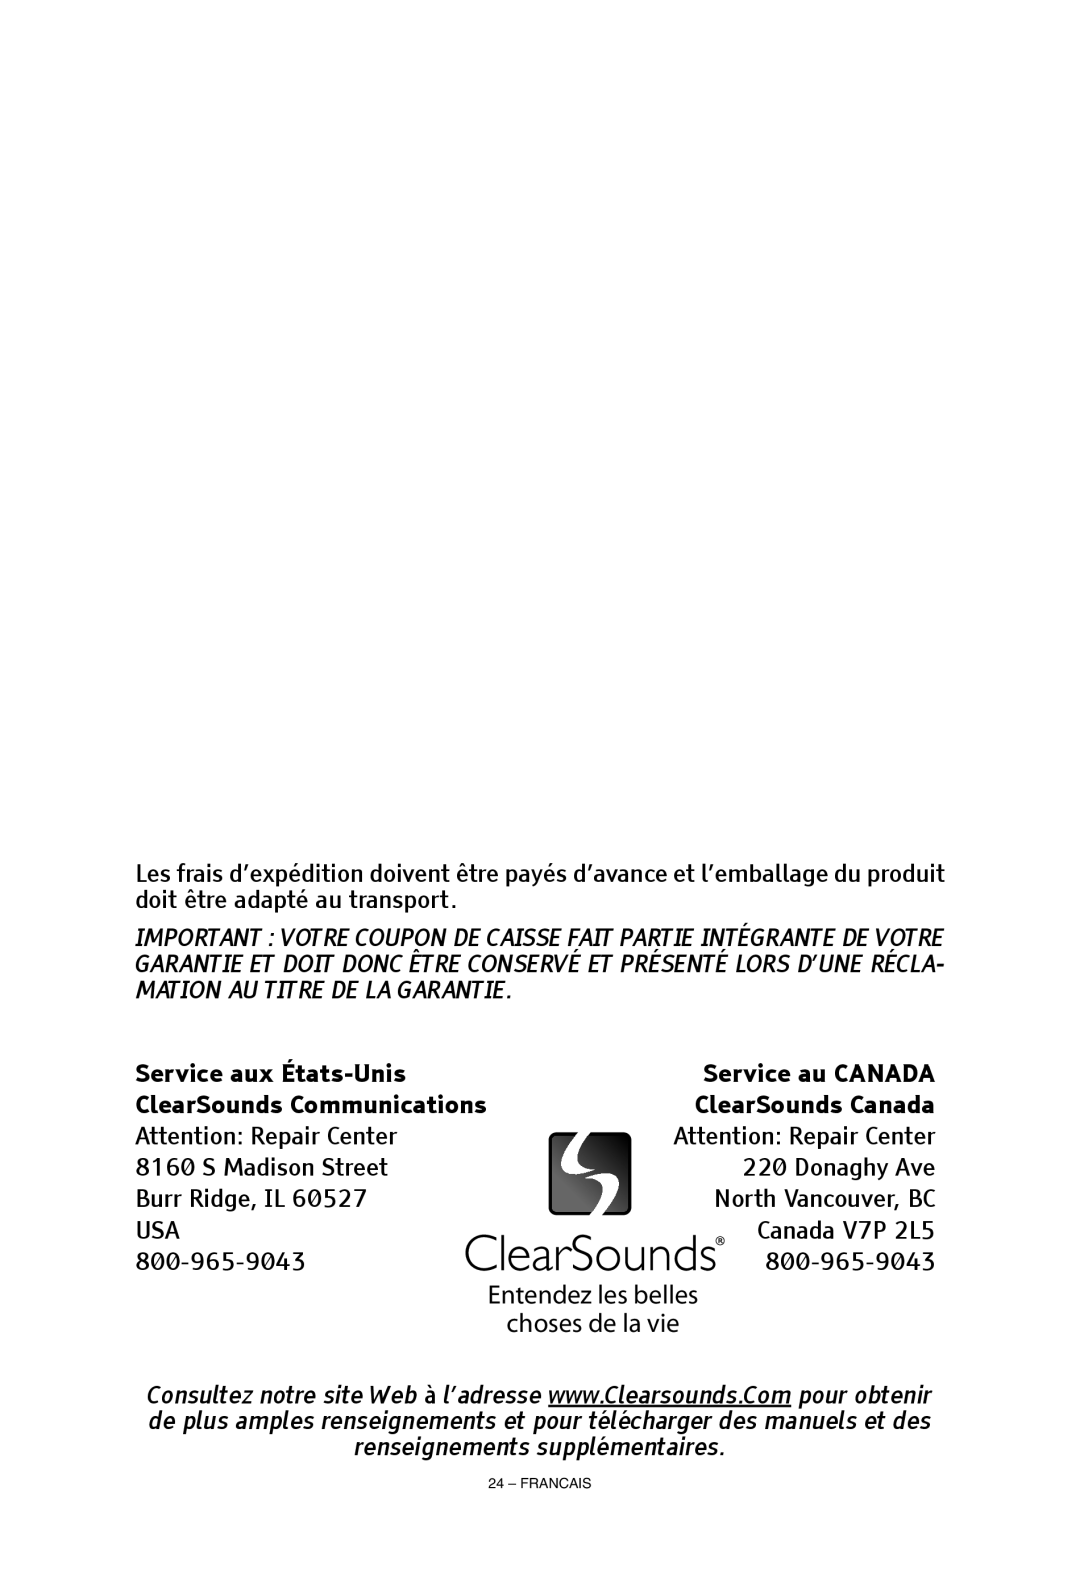 ClearSounds CS-A55 manual Entendez les belles choses de la vie, Burr Ridge, IL 60527 USA 